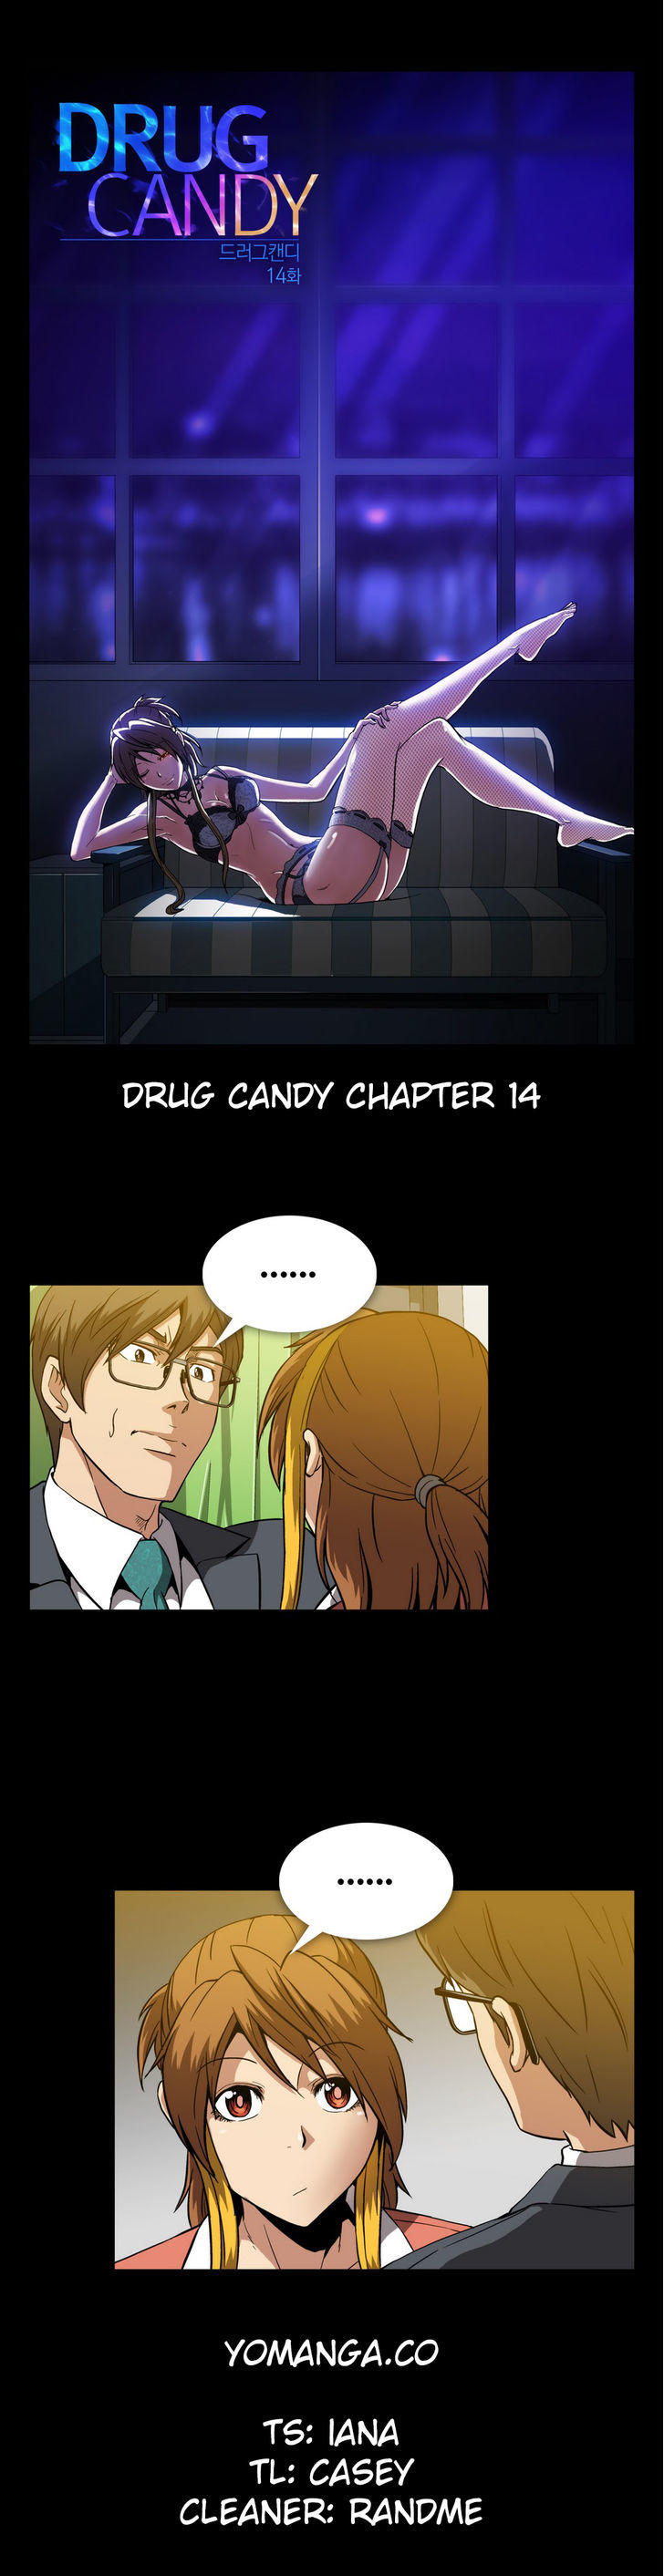 Drug candy webtoon